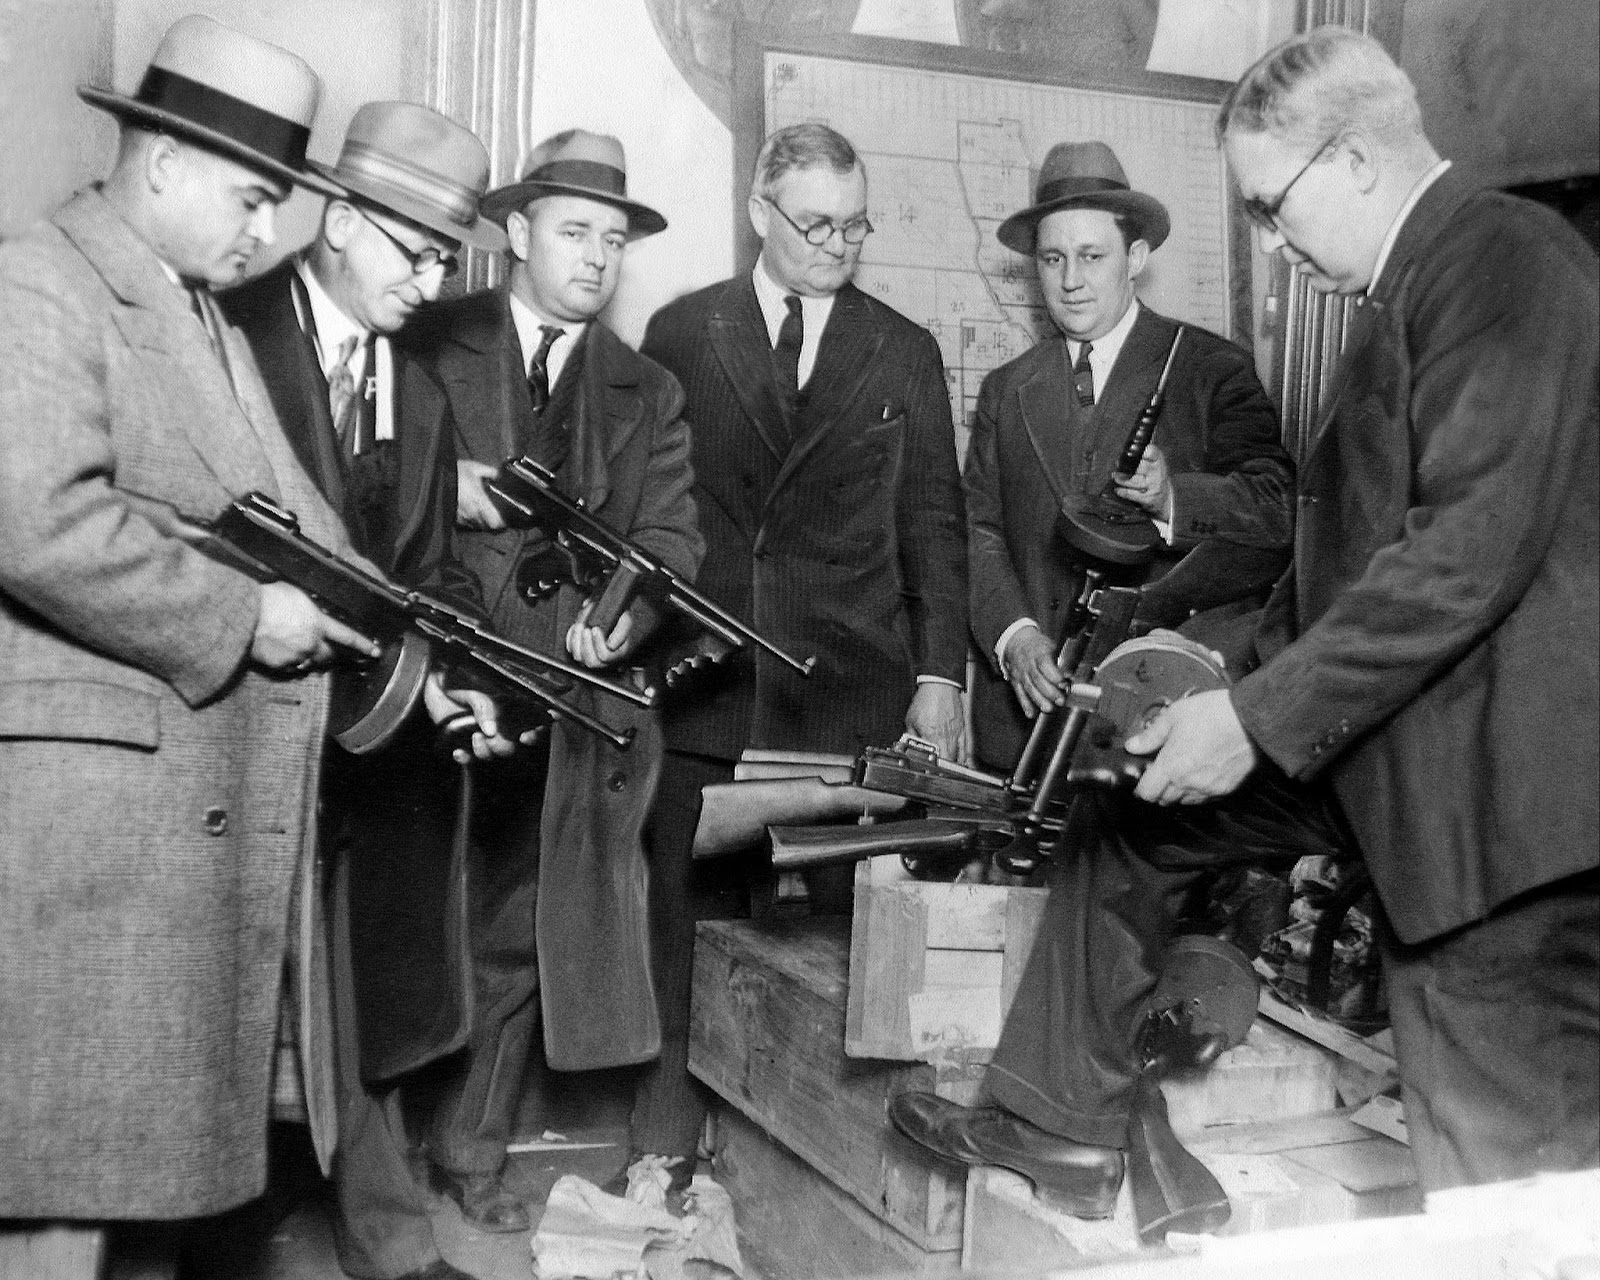 "Tội phạm súng đạn buộc cảnh sát Chicago phải nâng cấp vũ trang" - Ngày 9 tháng 1 năm 1921